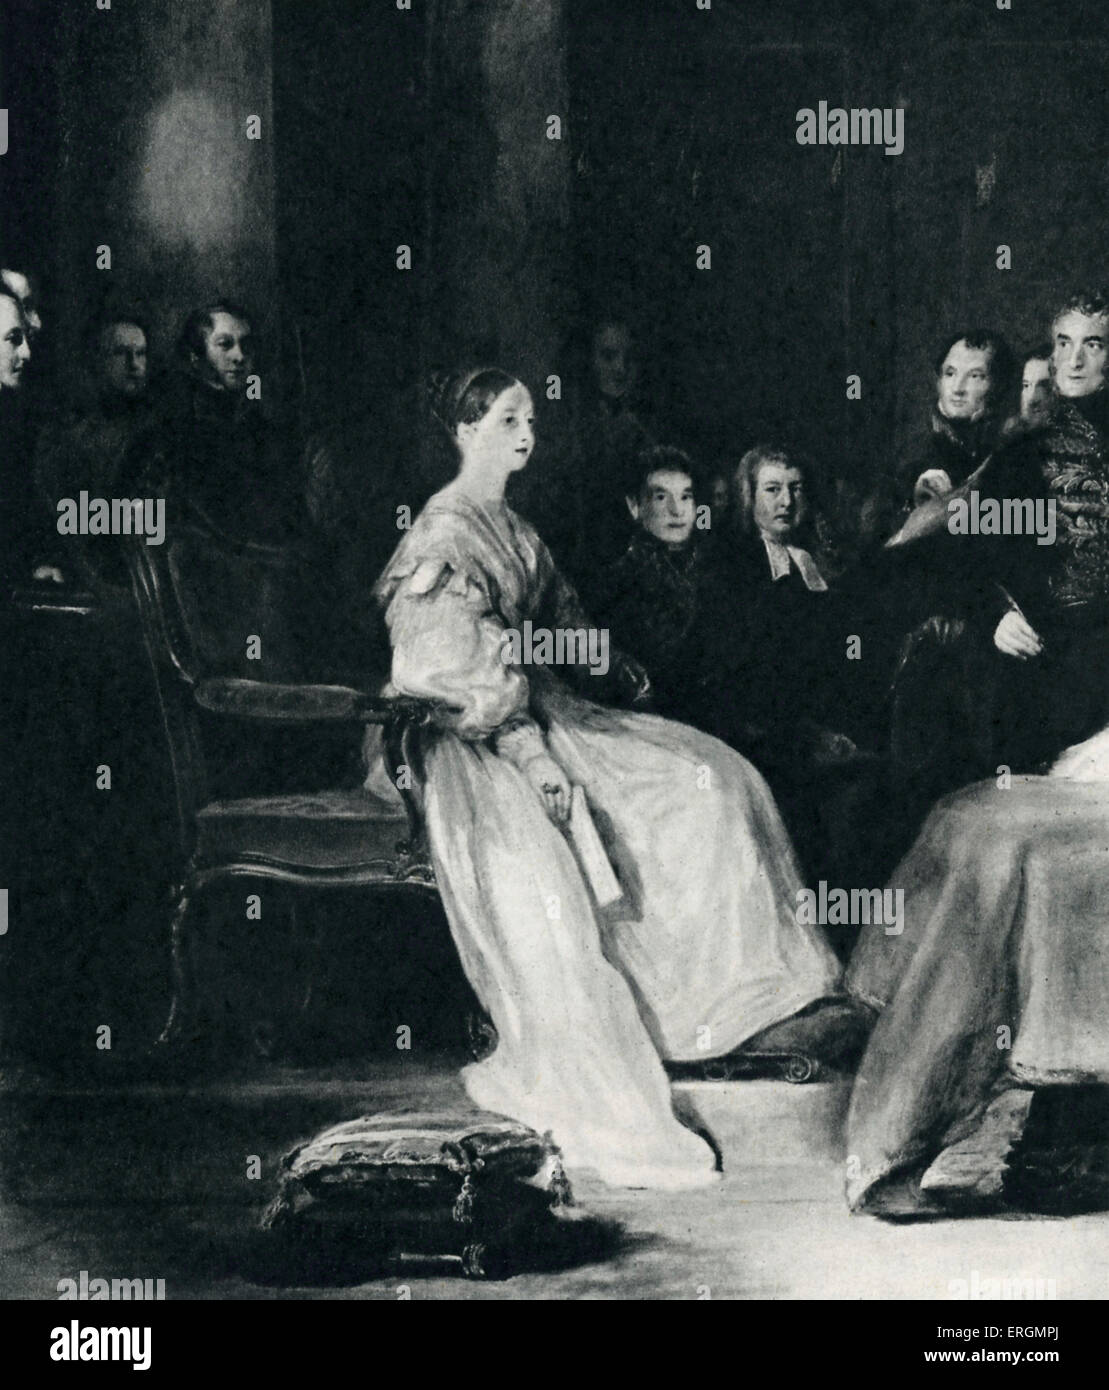 La regina Victoria (24 maggio 1819 - 22 gennaio 1901) nella foto al suo primo Consiglio Privy nel 1837. Regnò dal 1837 - 1901. Dopo il cambio dell'olio Foto Stock